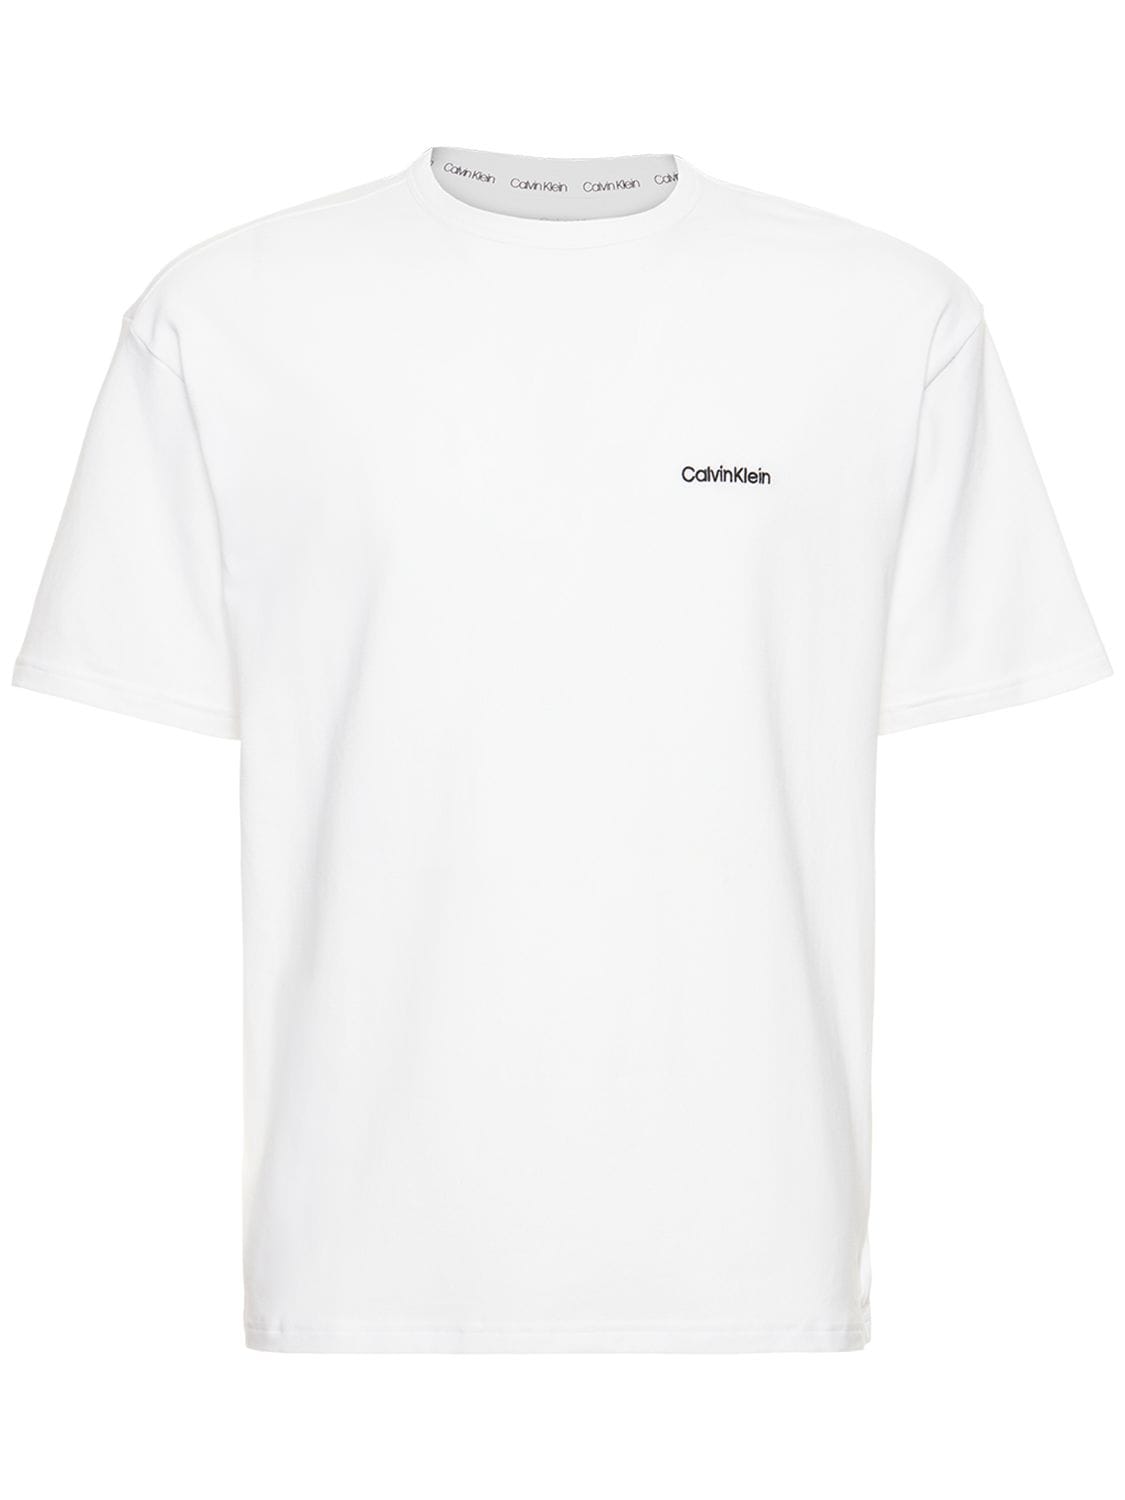 CALVIN KLEIN UNDERWEAR Logo Print Cotton Blend T-shirt